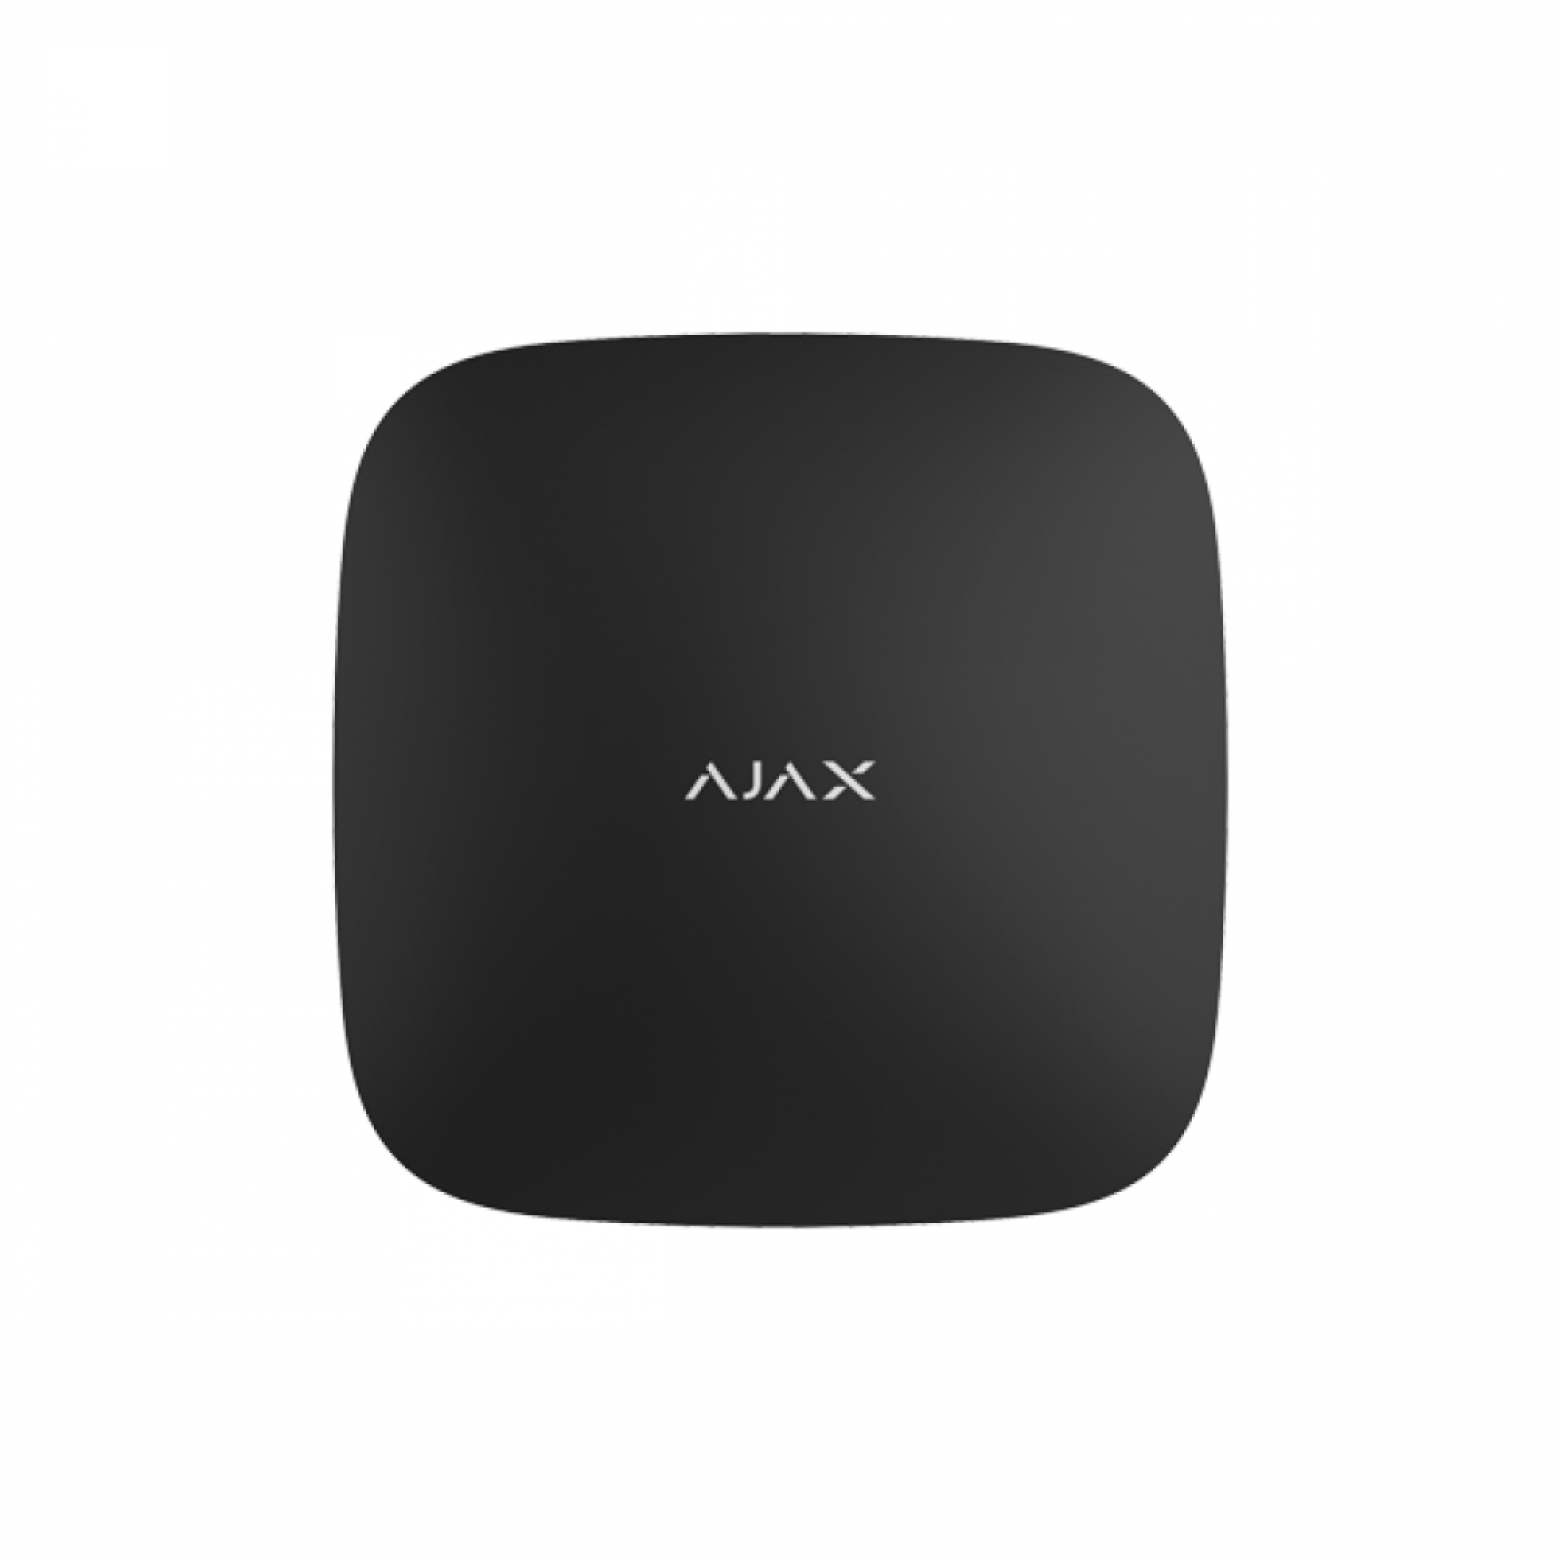 AJAX Hub 2 Draadloos Alarmsysteem wit/zwart